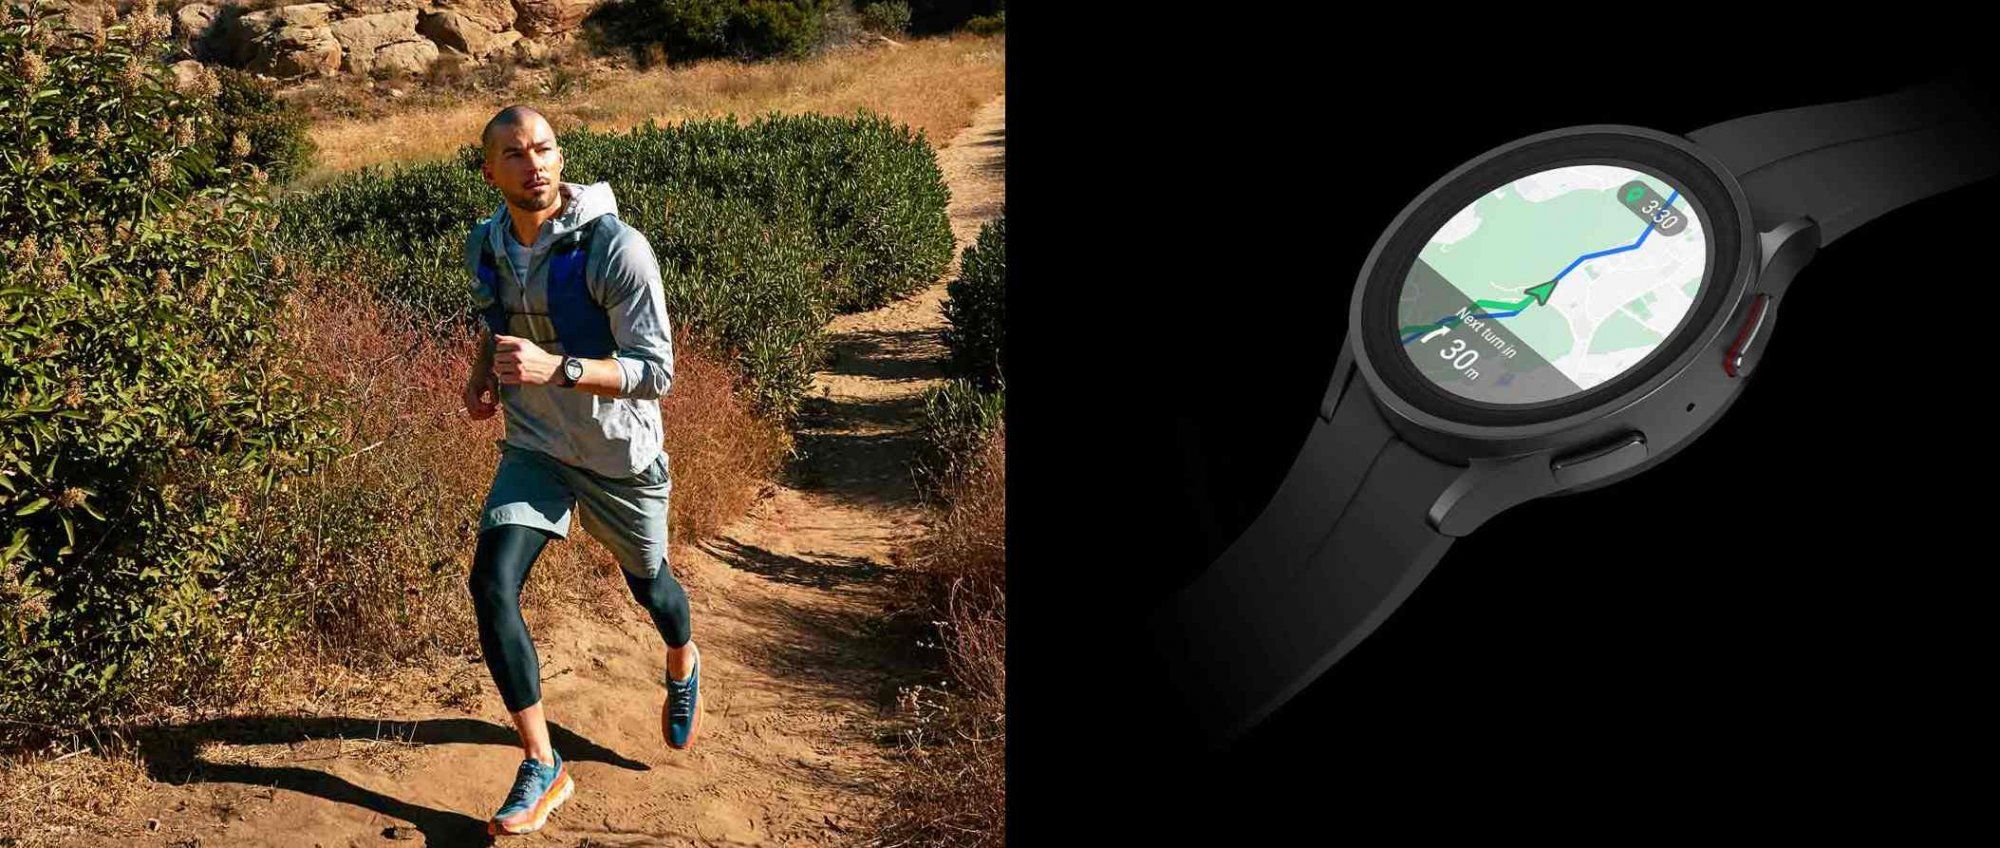 Samsung Galaxy Watch 5 Pro chytré hodinky výkonné chytré hodinky zdravotní funkce operační systém Wear OS jedinečné funkce vyspělé funkce Google Pay EKG míra okysličení krve fitness hodinky vlajkový výkon kvalitní materiál